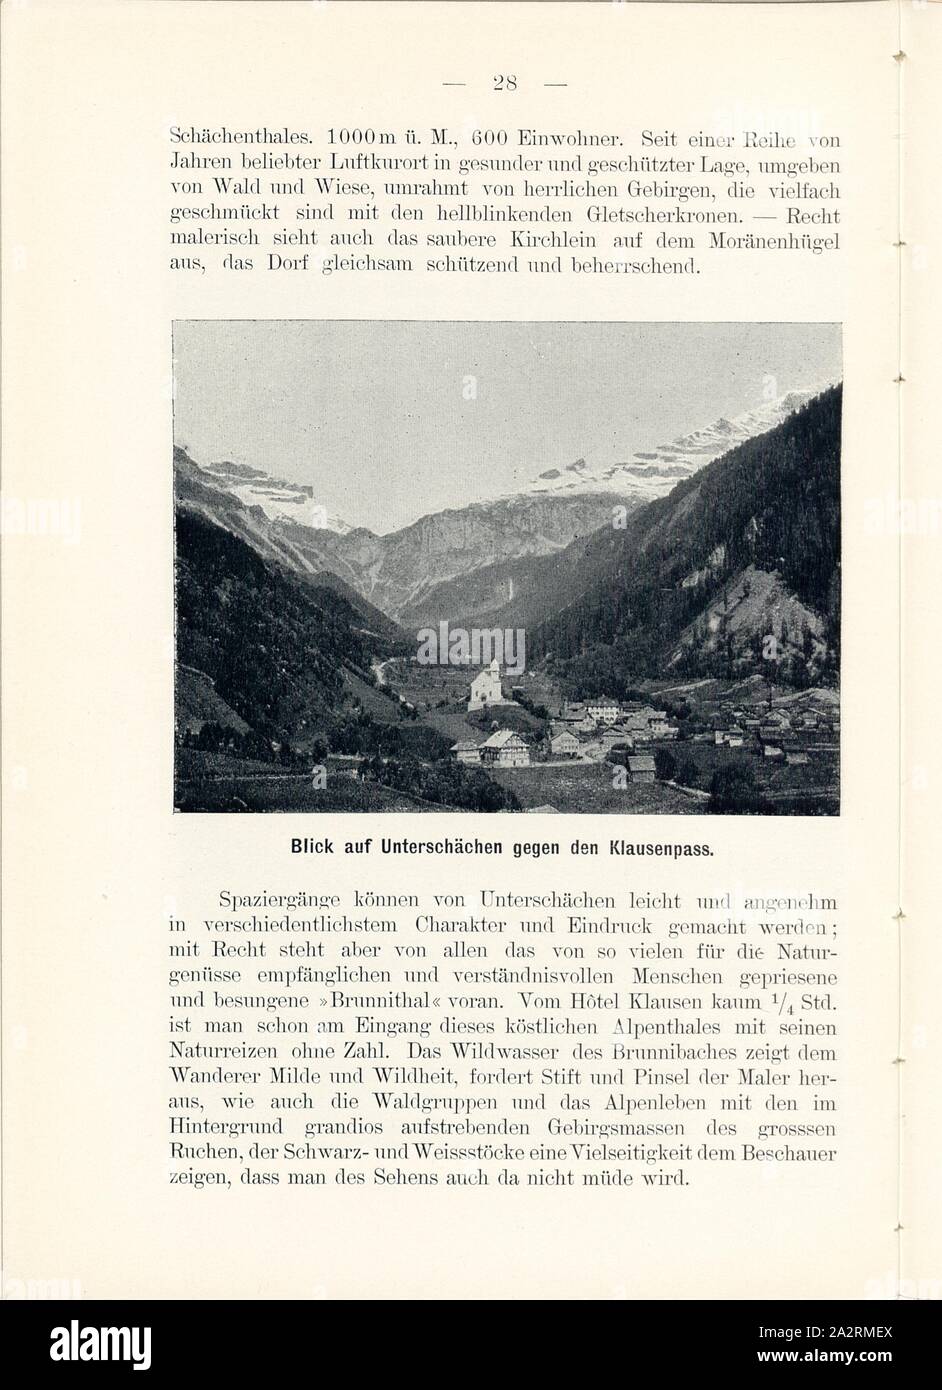 View of Unterschächen against the Klausenpass, Unterschächen in the canton of Uri, Signed: M.R.C, Fig. 26, p. 28, Meisenbach, Riffarth und Co. (imp.), 1900, J. Knobel: Illustrierter Reisebegleiter für die Alpenstrasse des Klausen und ihre Zufahrtslinien. Glarus: Buchdruckerei J. Spälti, 1900 Stock Photo